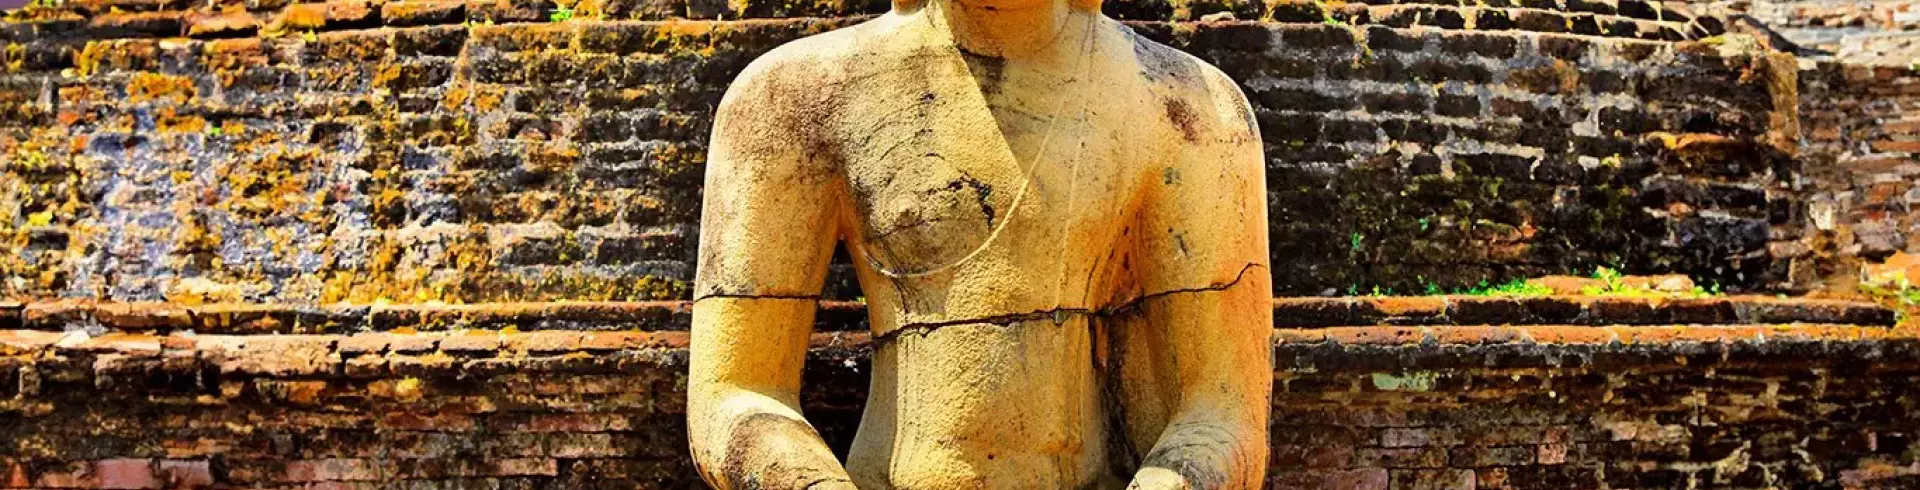 Sri Lanka - szlakiem buddyjskich skarbów